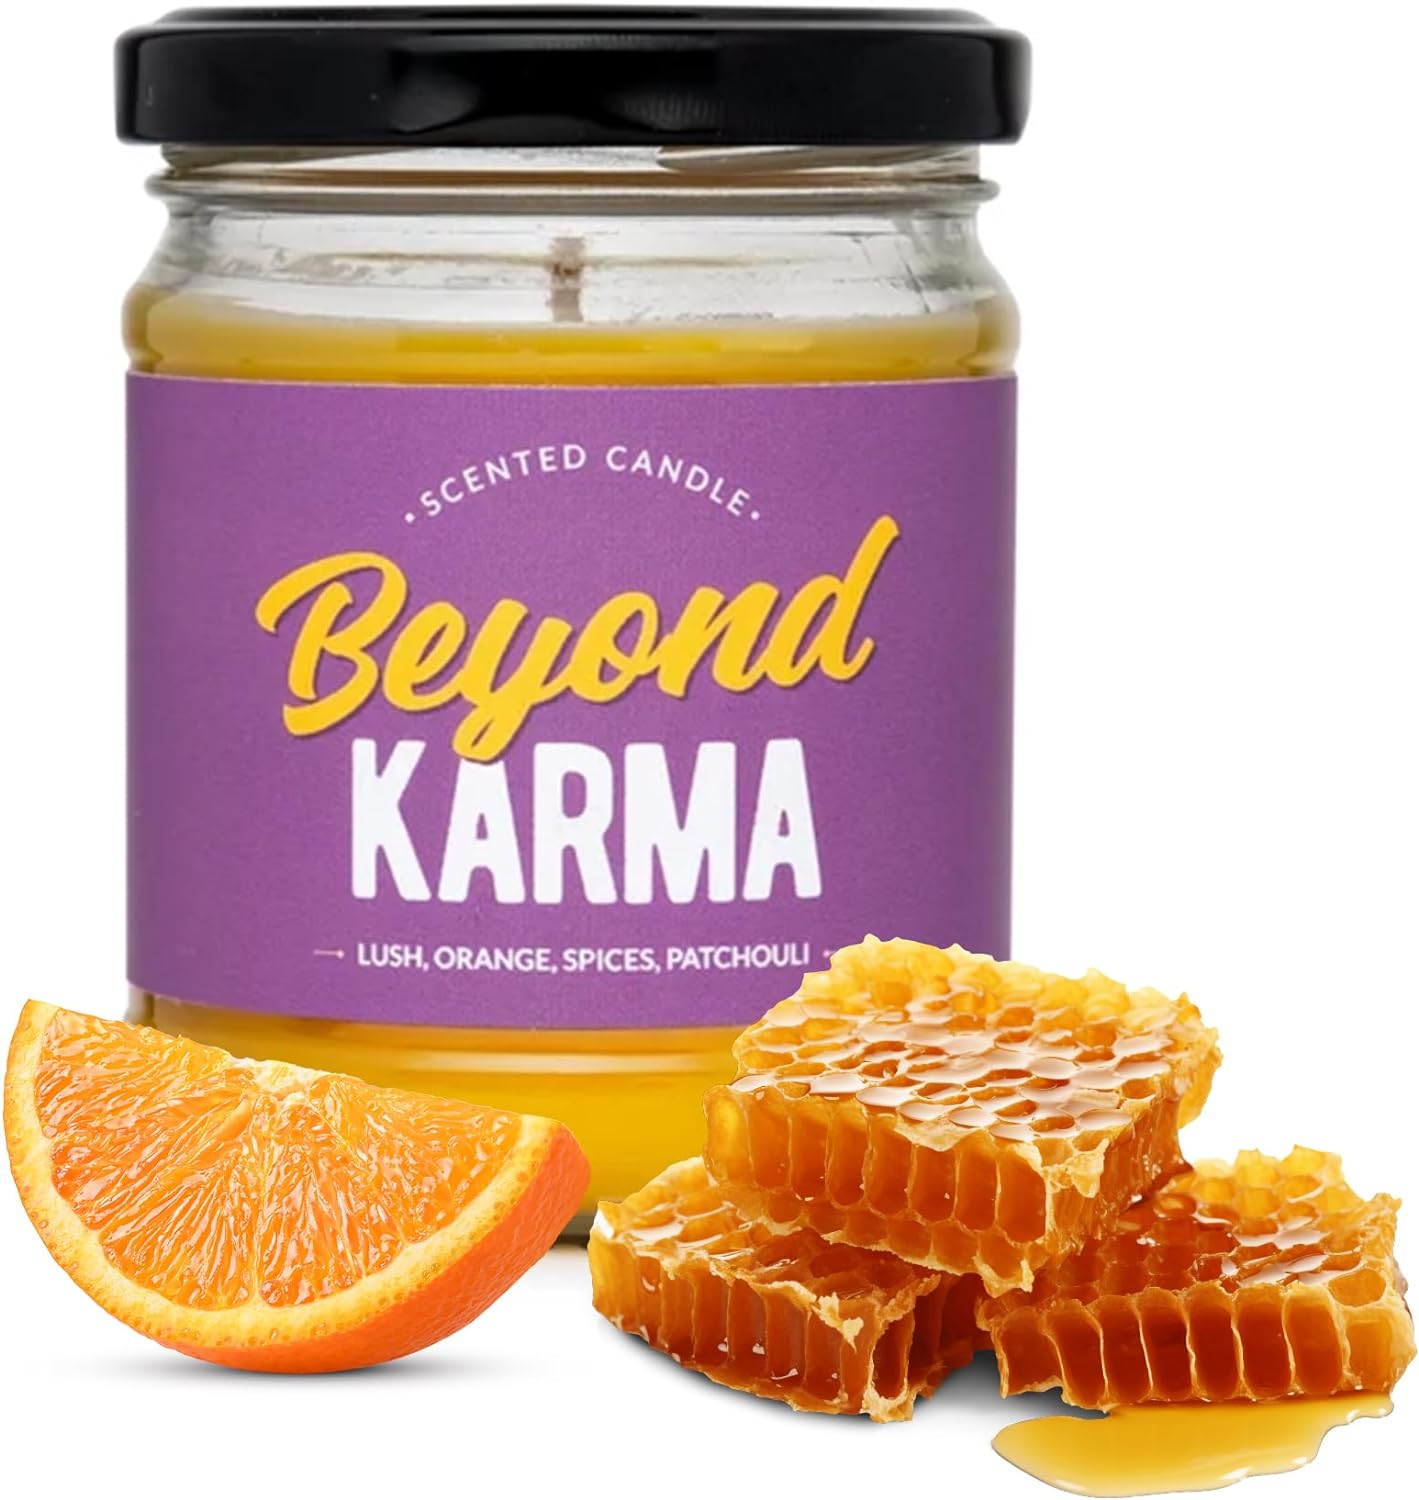 Beeswax Candle "Beyond Karma"